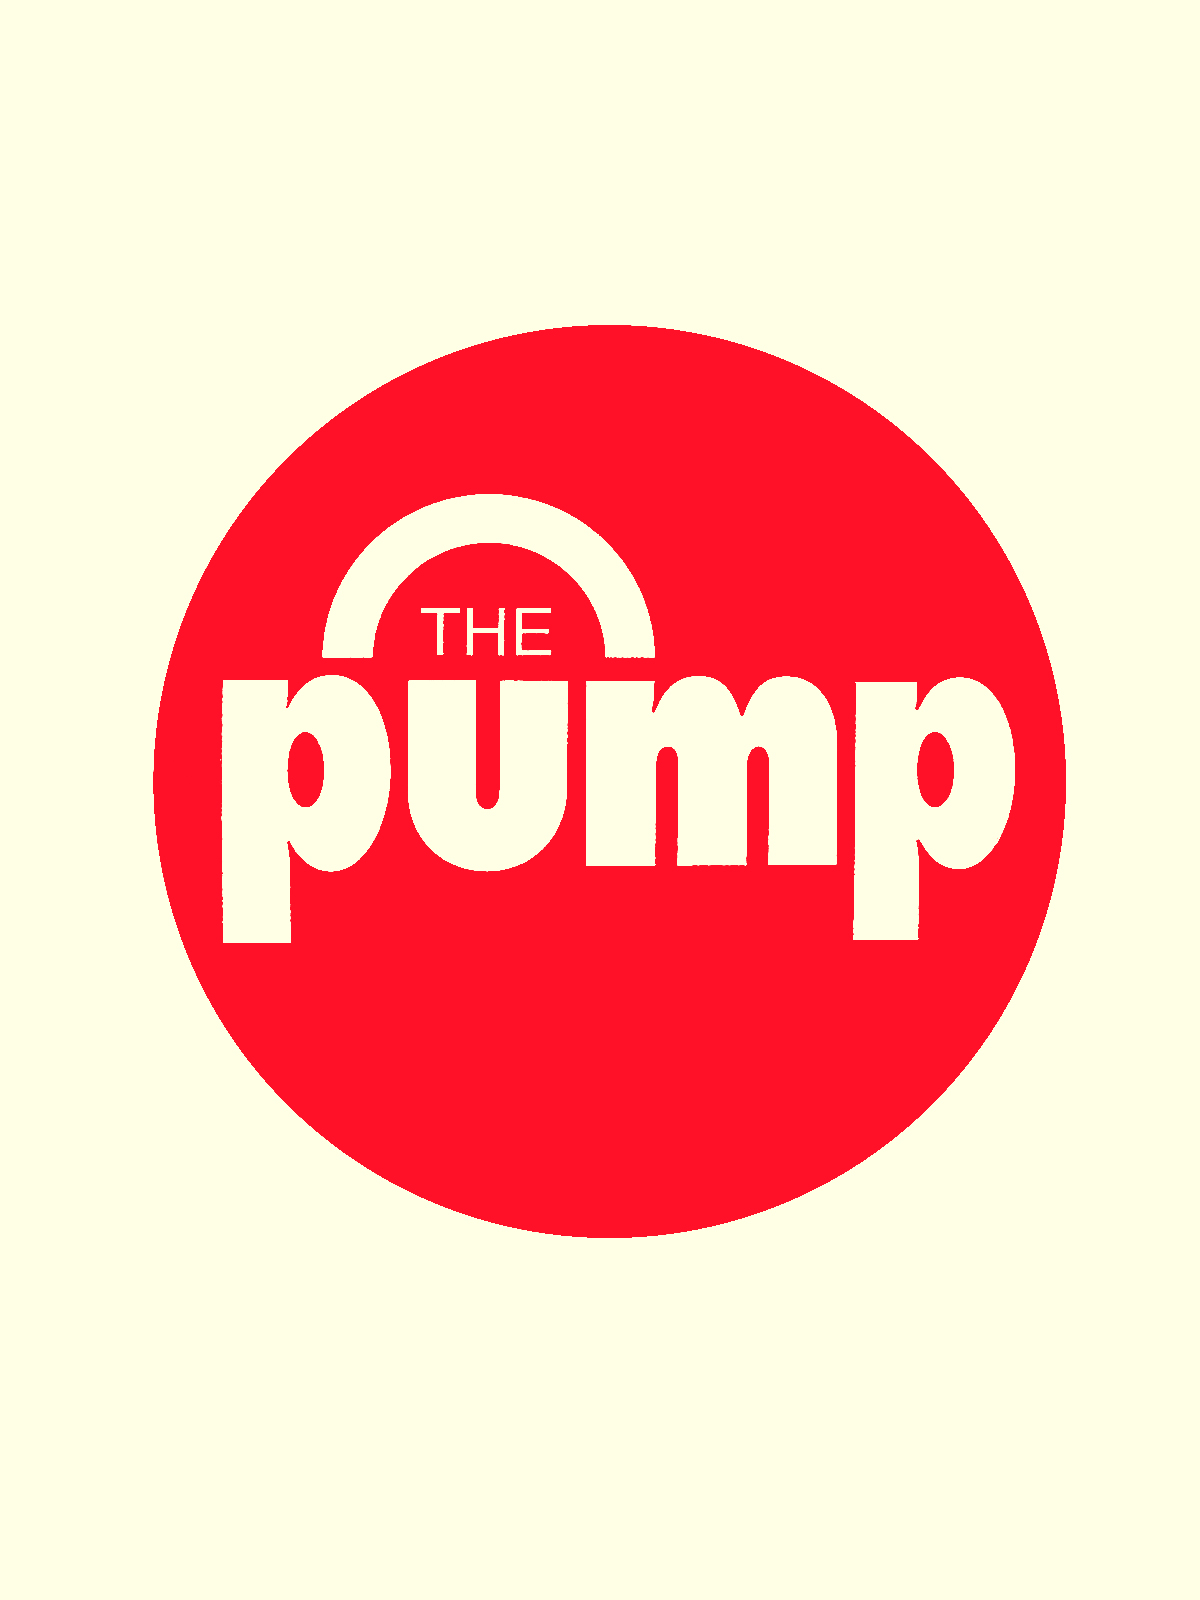 reebok pump logo